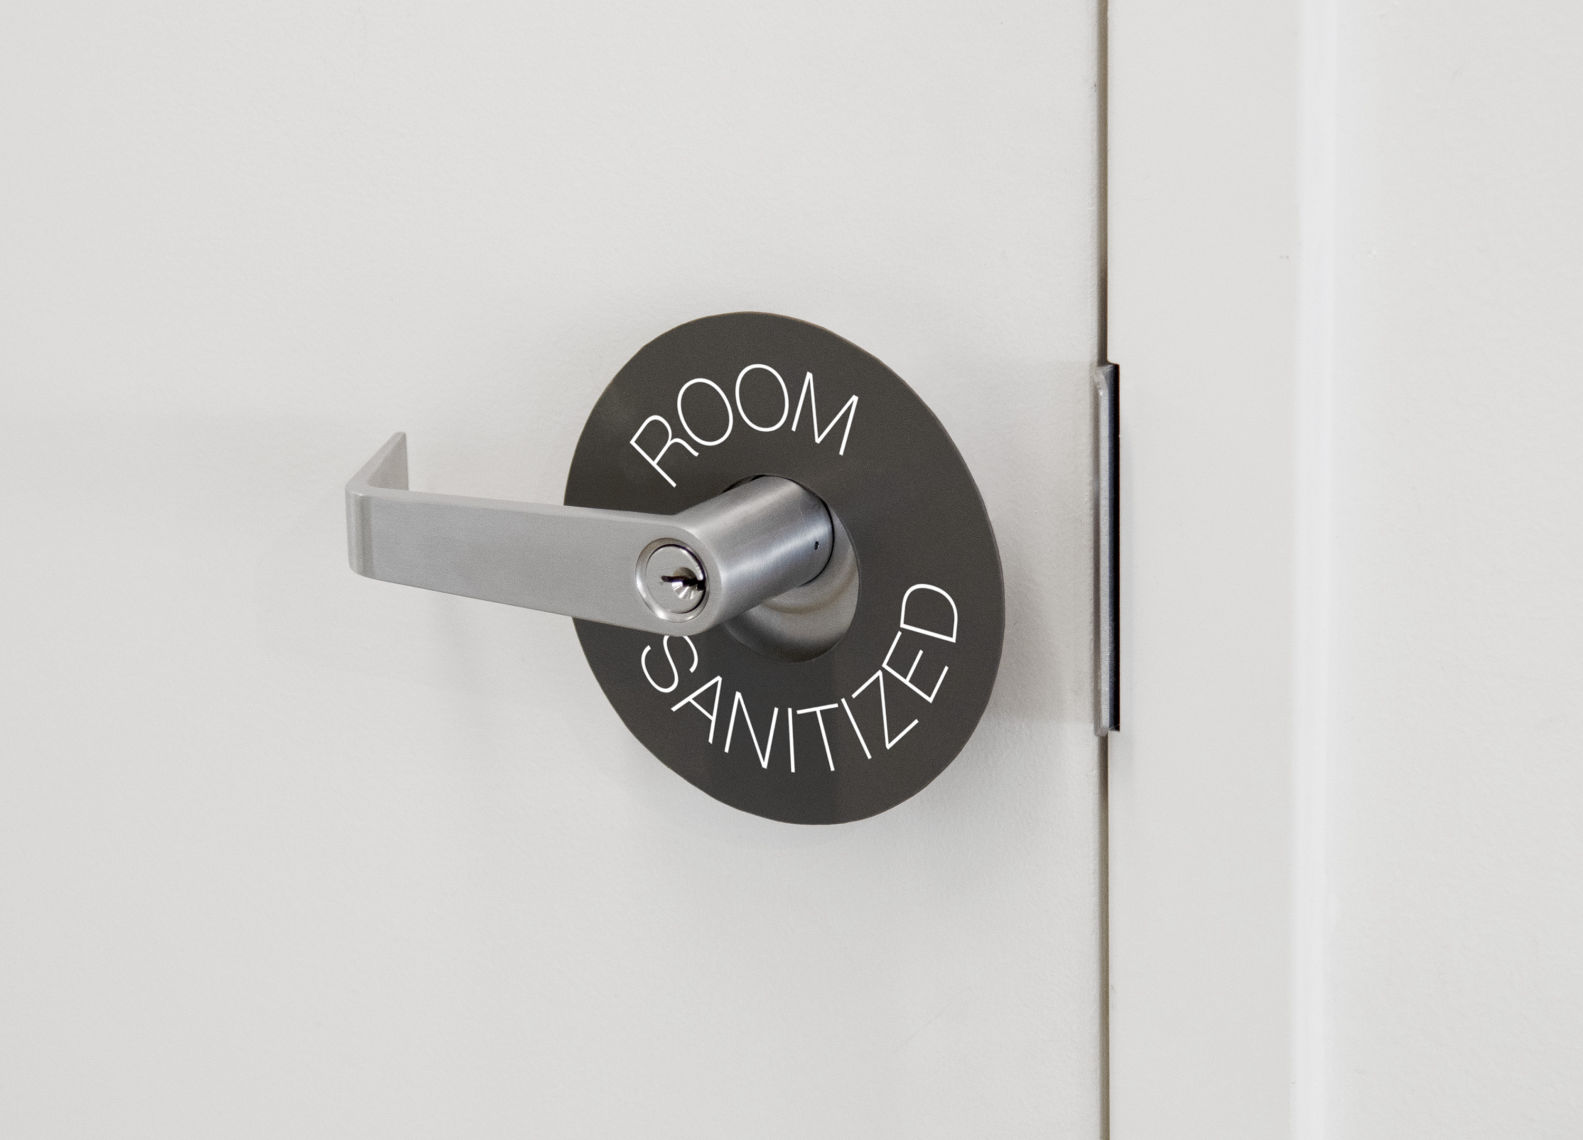 Spavision | 'Room Sanitized' Sign